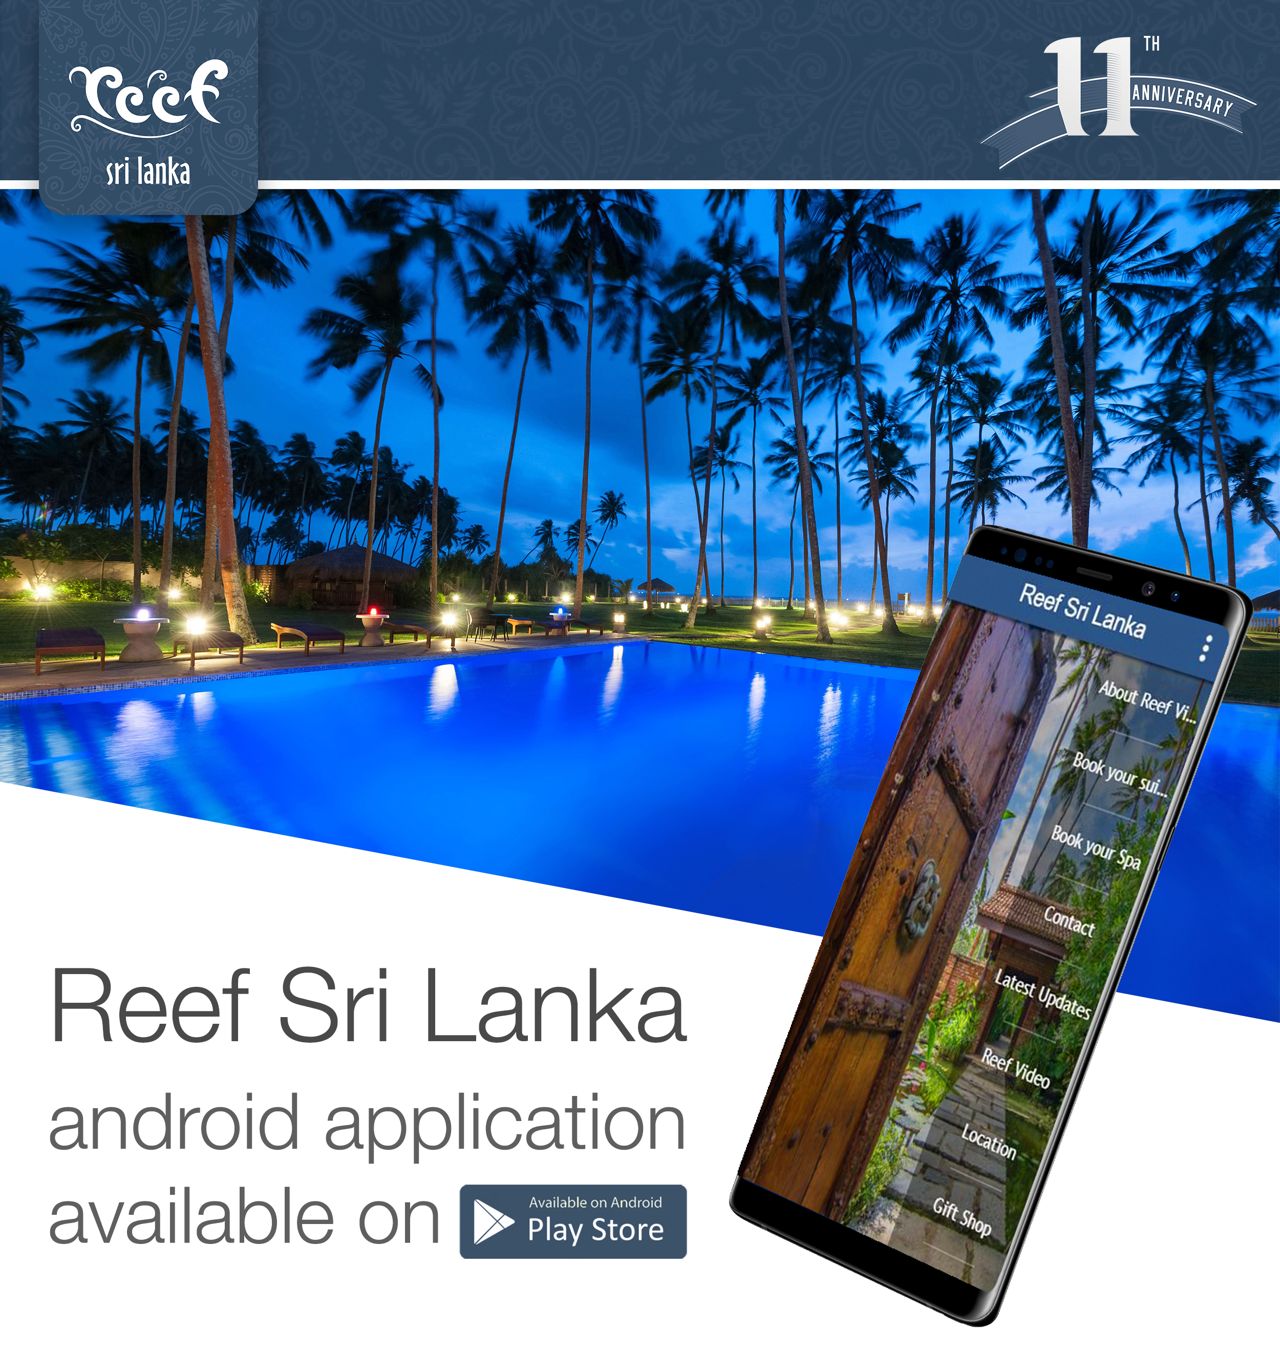 Reef Mobile app